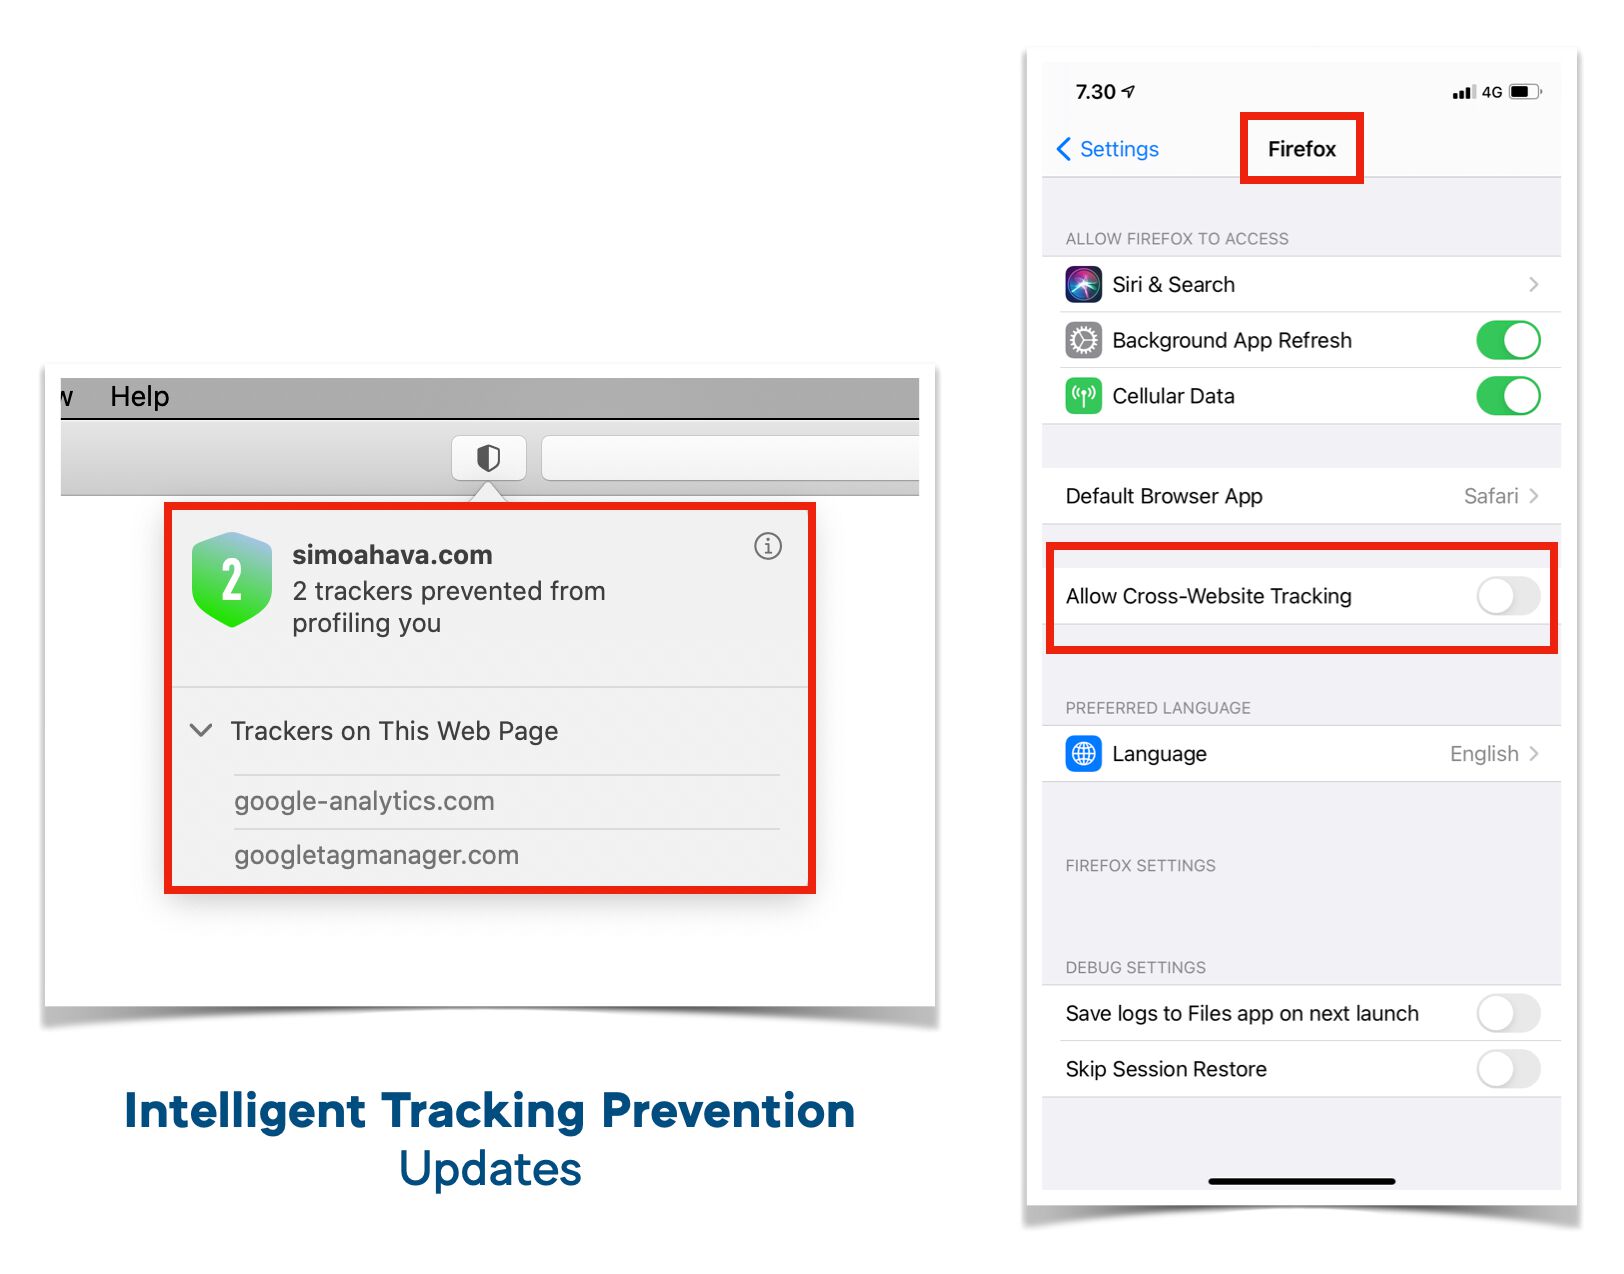 Intelligent Tracking Prevention updates